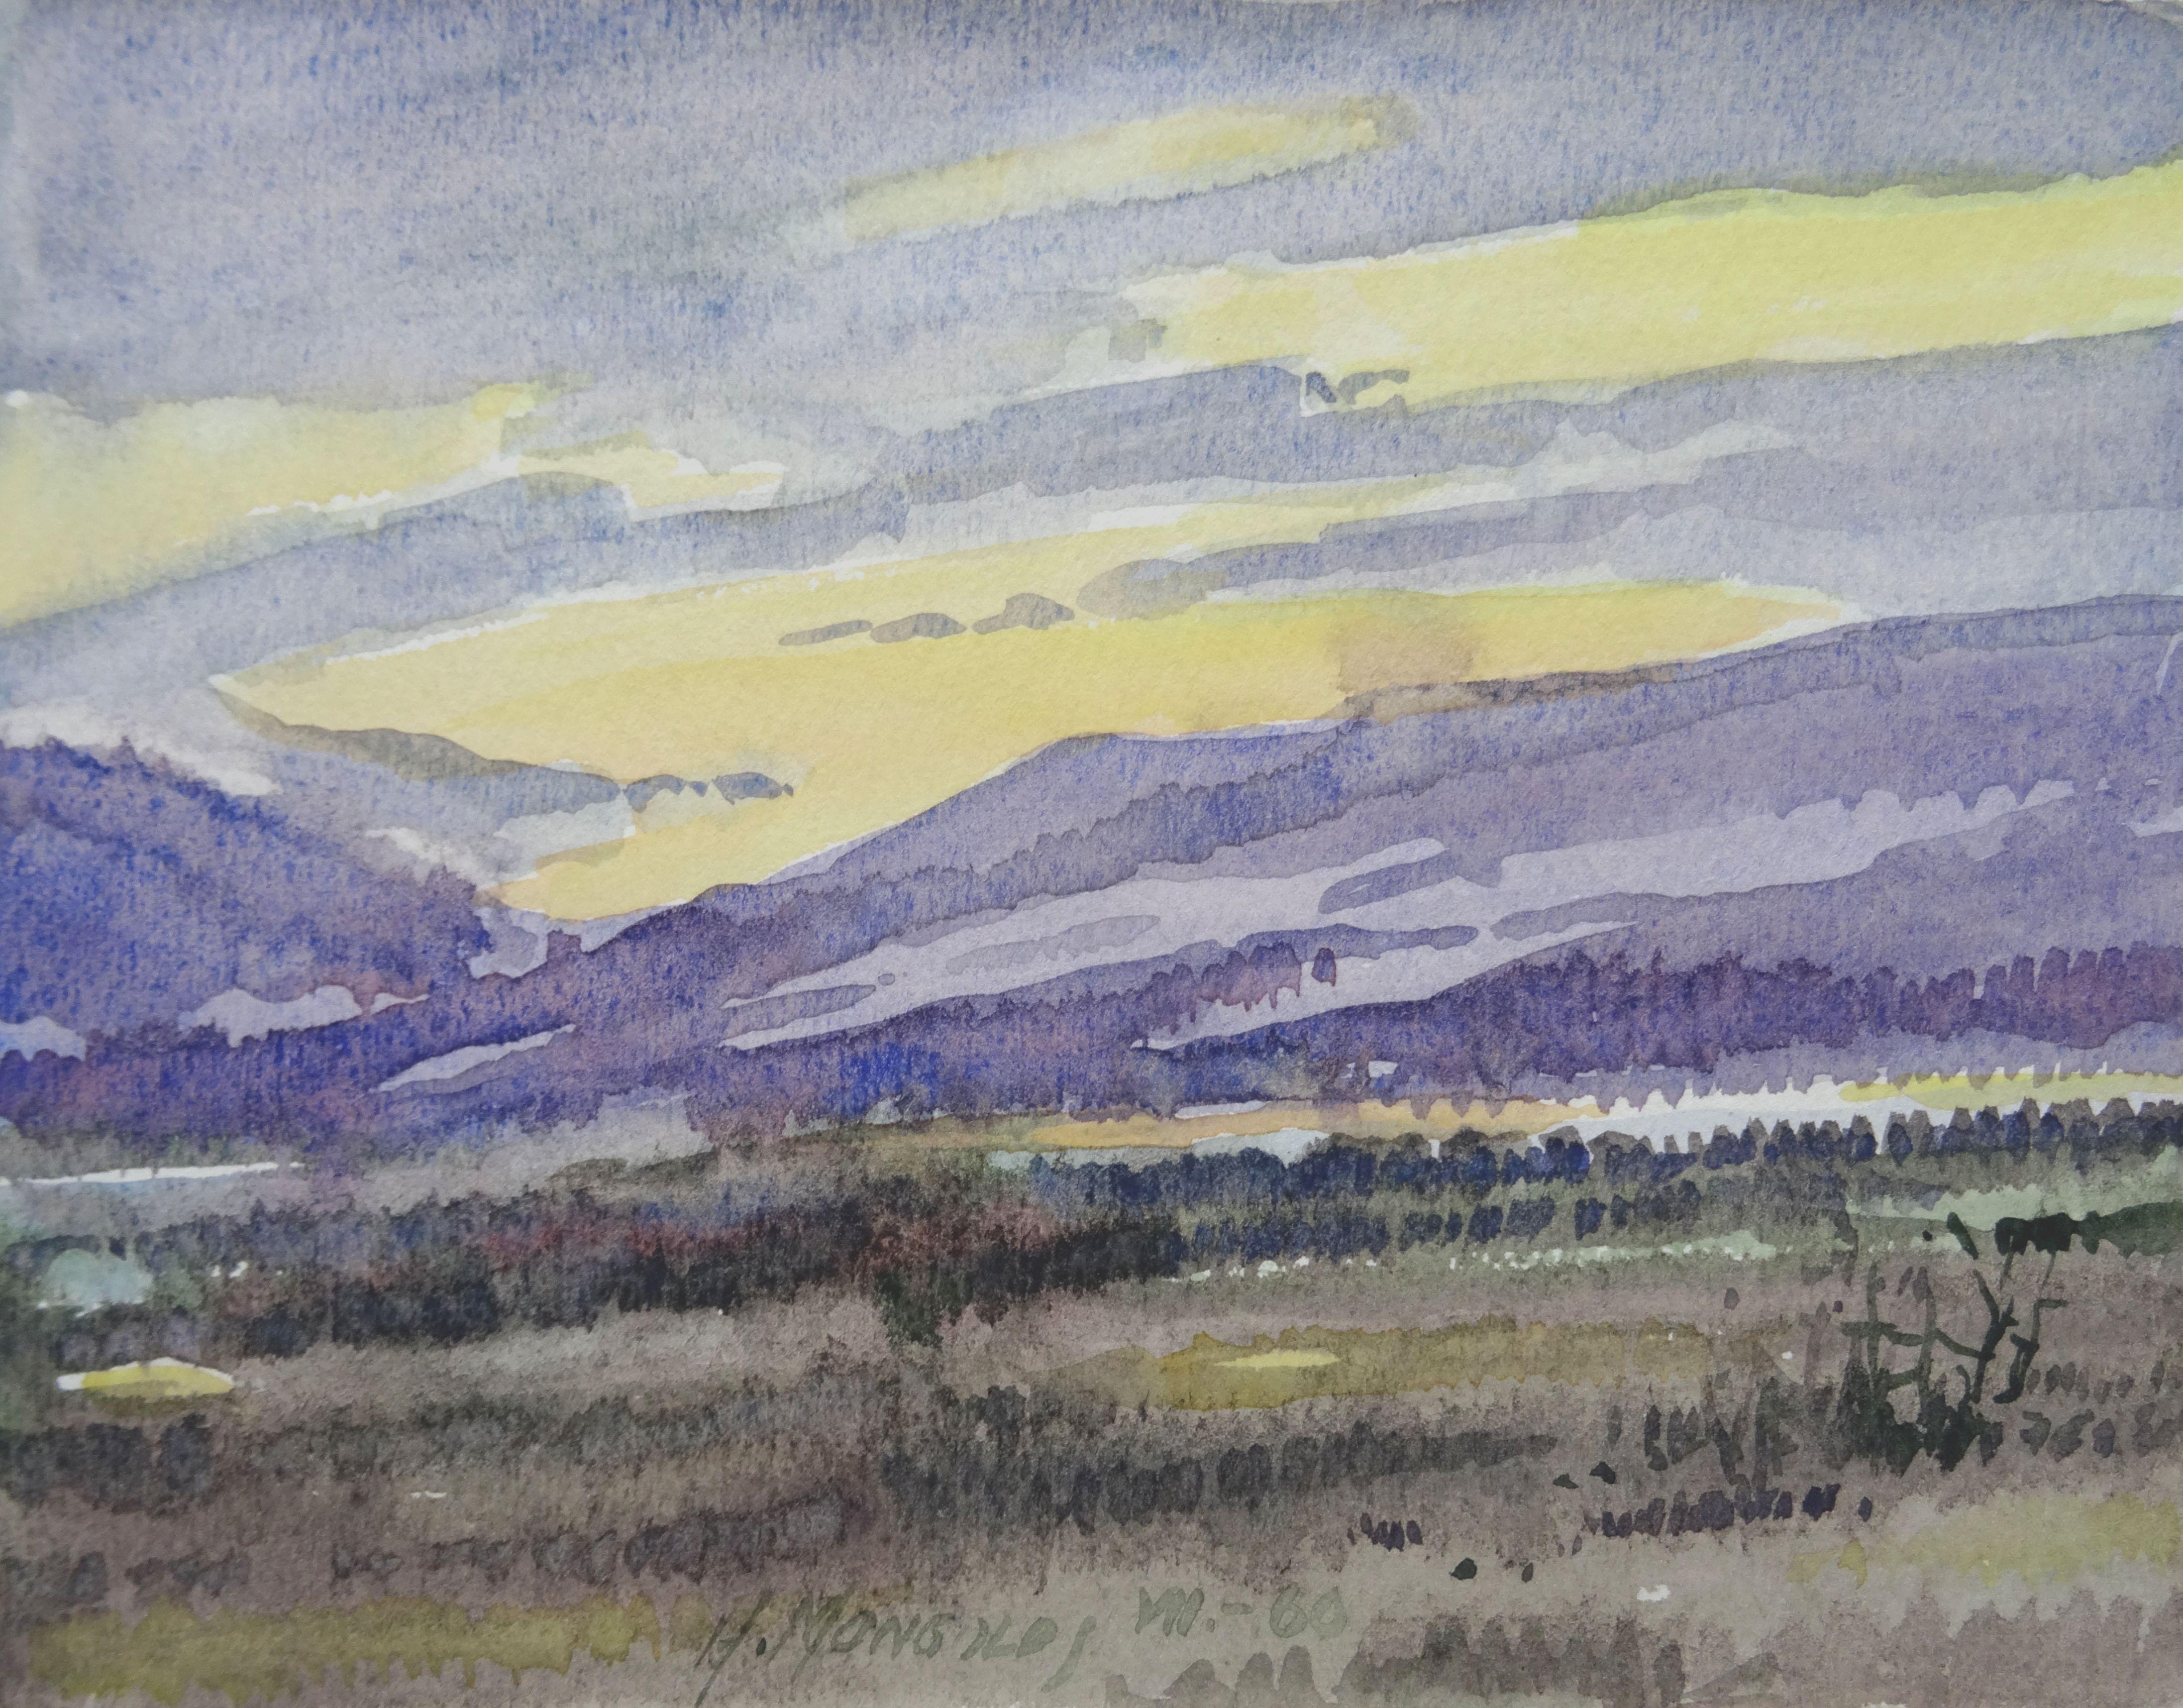 Herberts Mangolds Landscape Art - Evening  1960, paper/watercolor, 14x18.5 cm